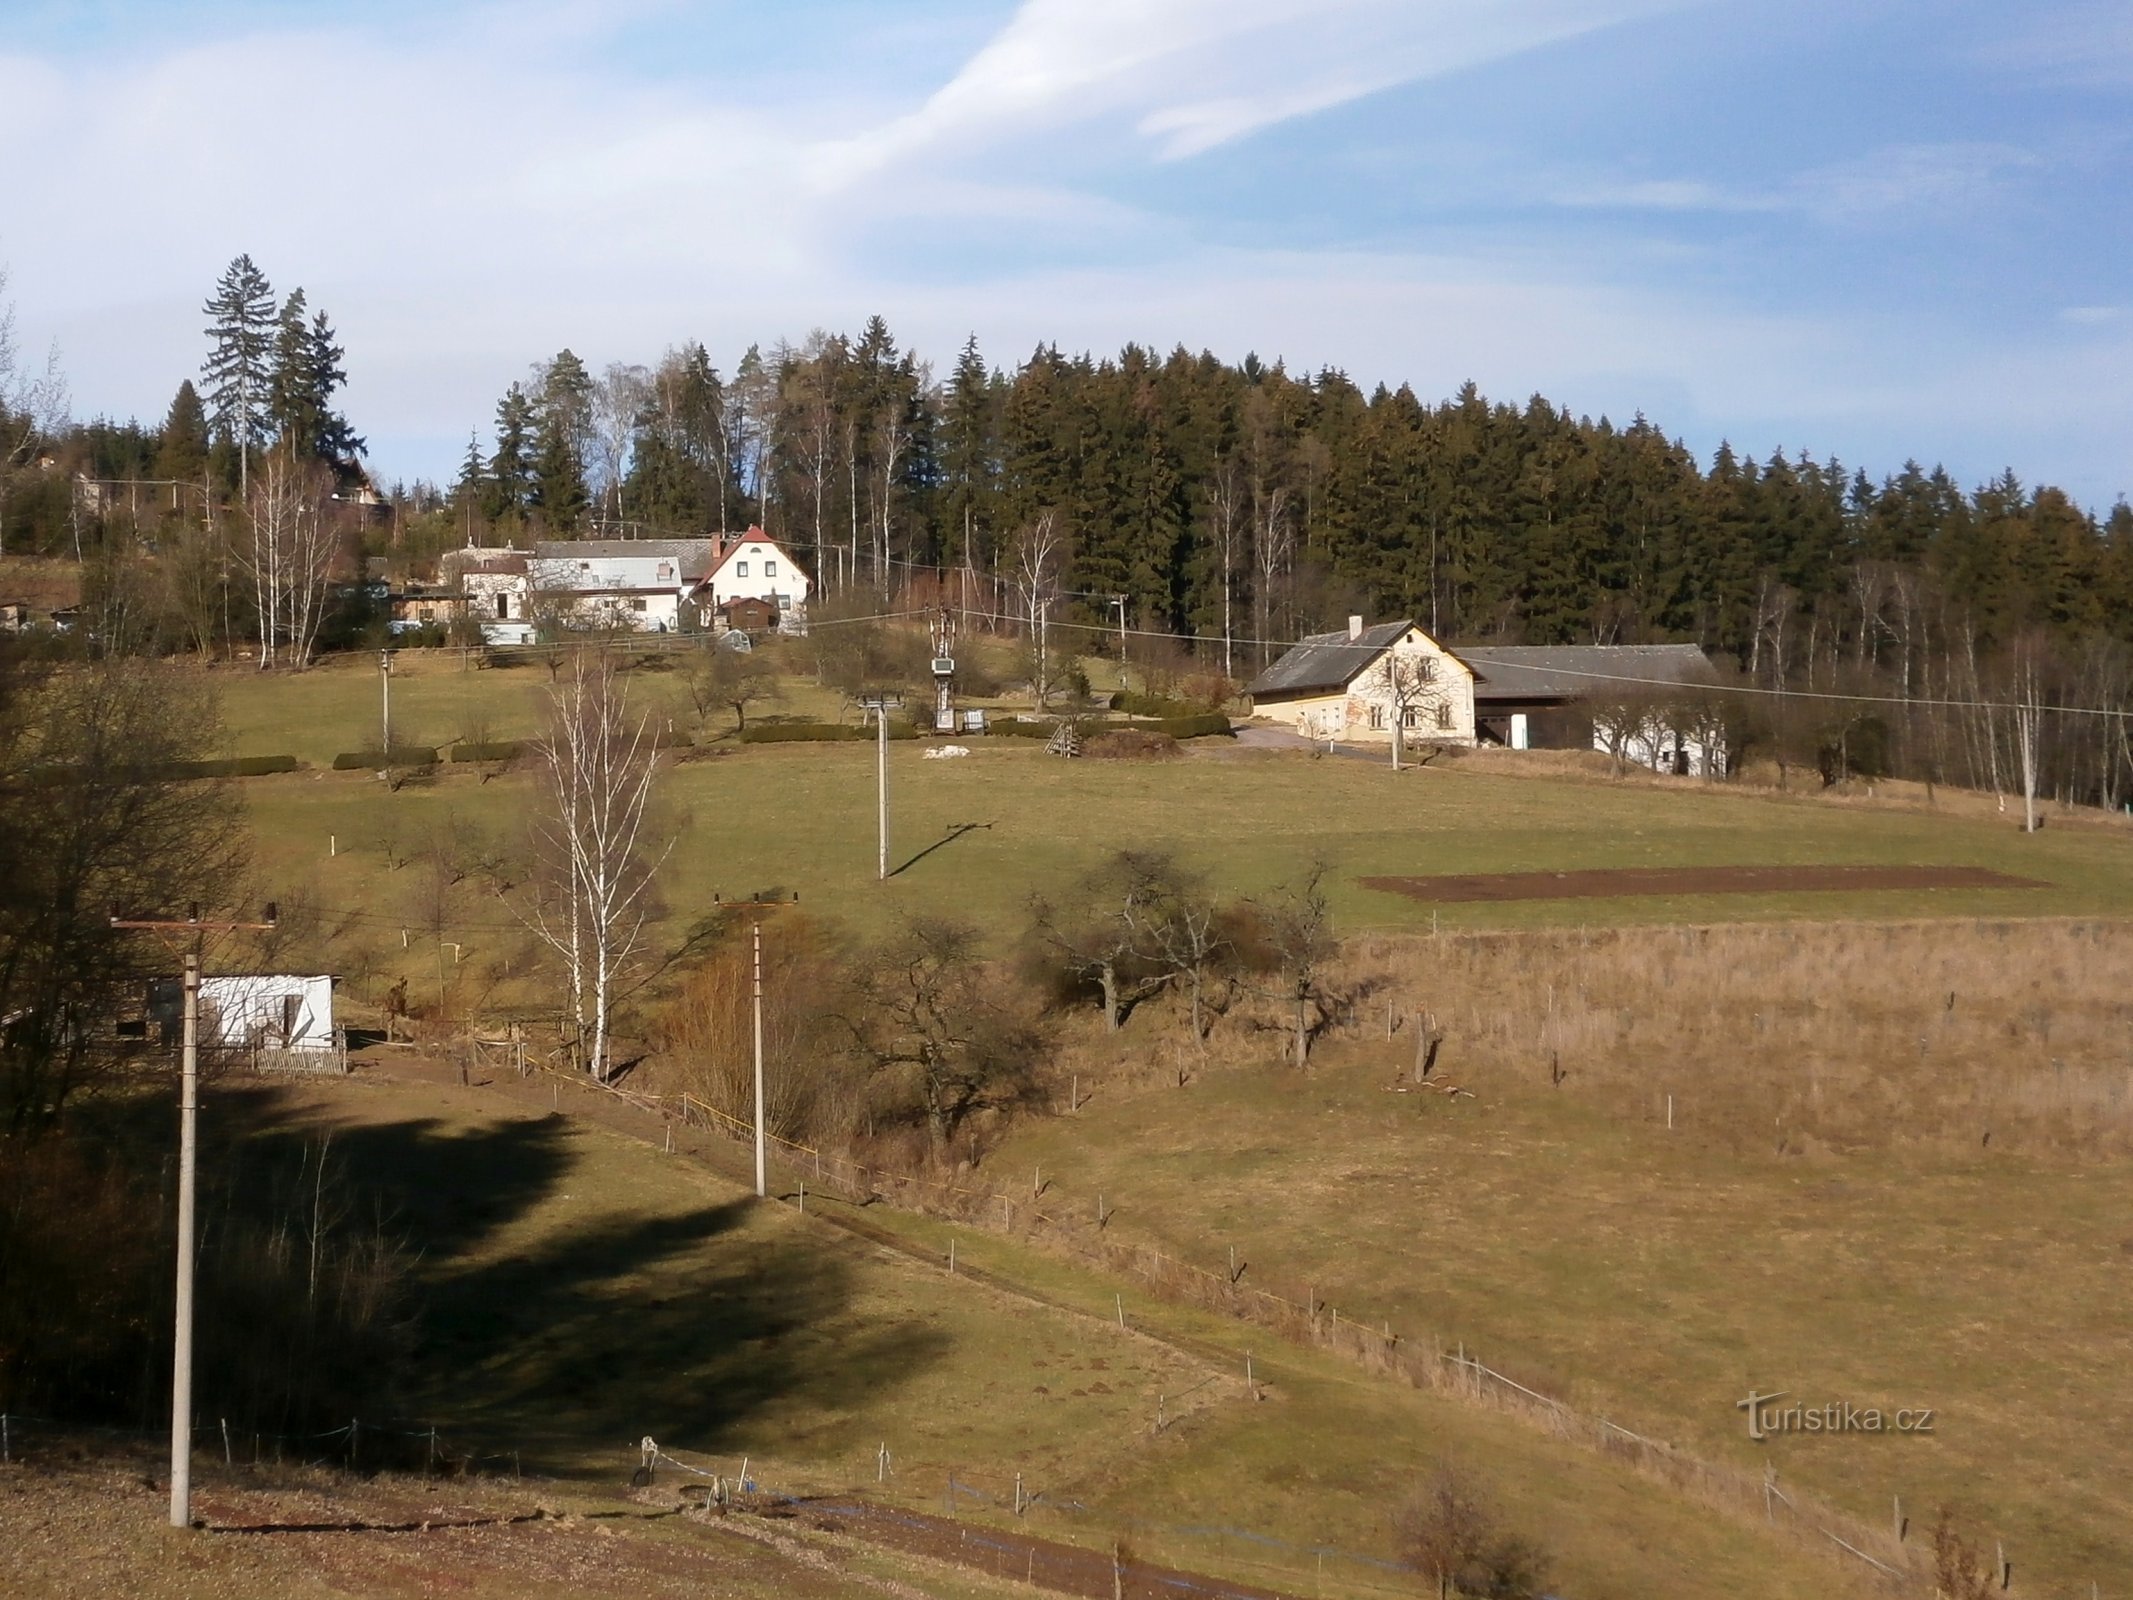 Libňatovská part of Svobodné